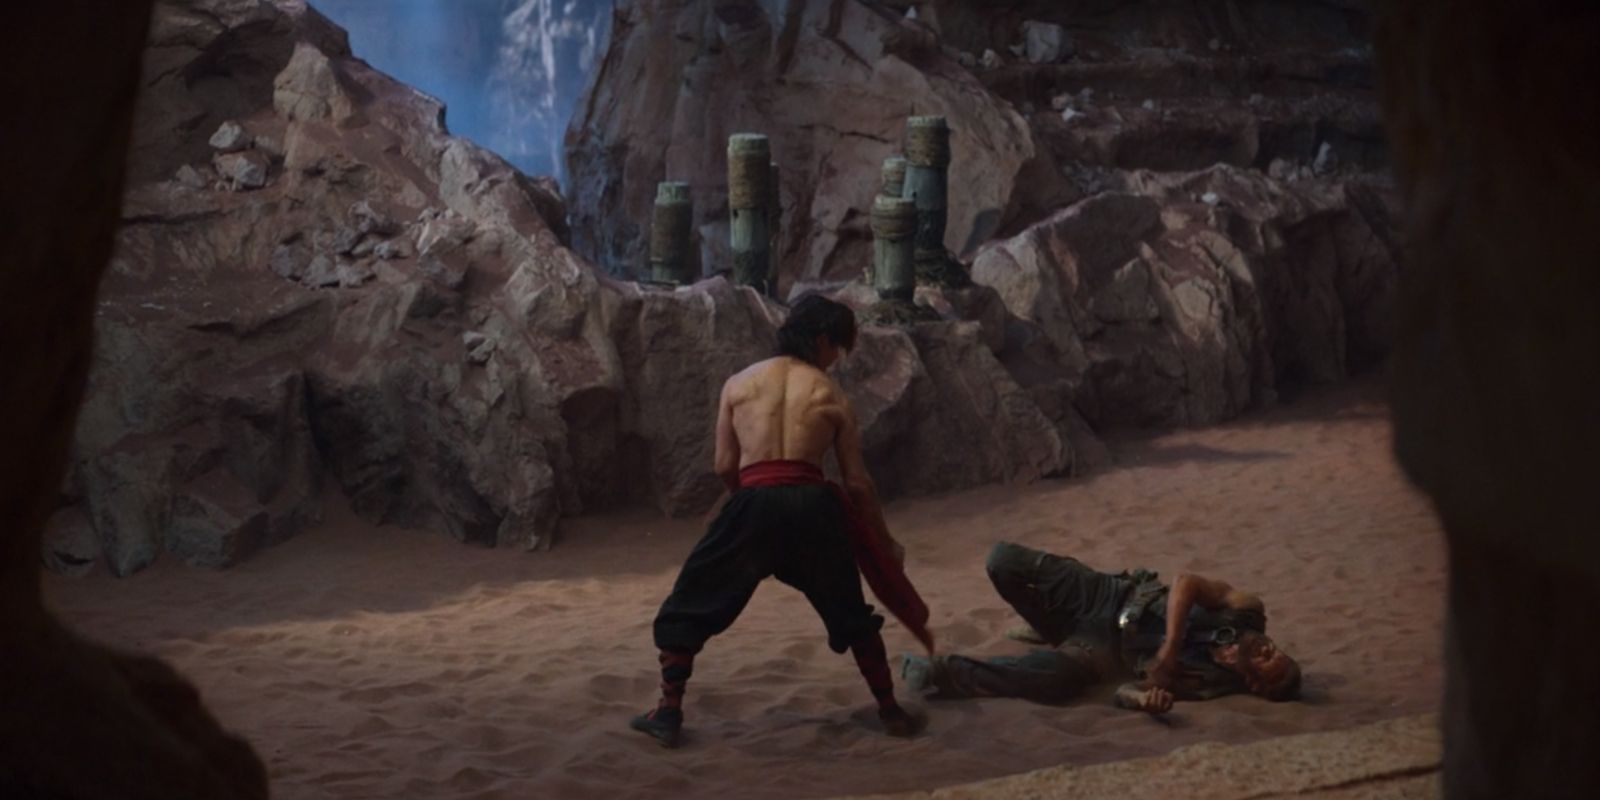 Liu Kang training Kano in Mortal Kombat 2021